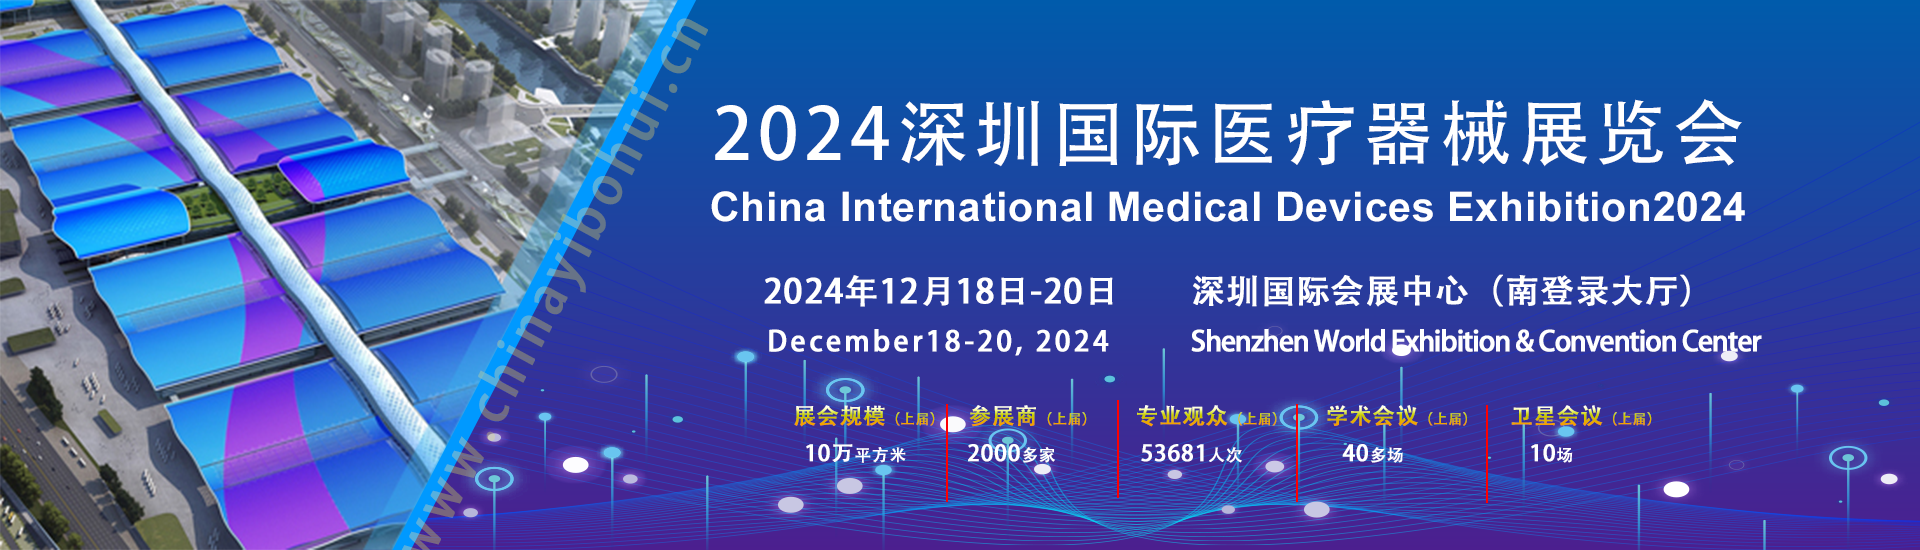 深圳市人大代表高端医疗器械产业联系点”启动 助推全市高端医疗器械产业发展